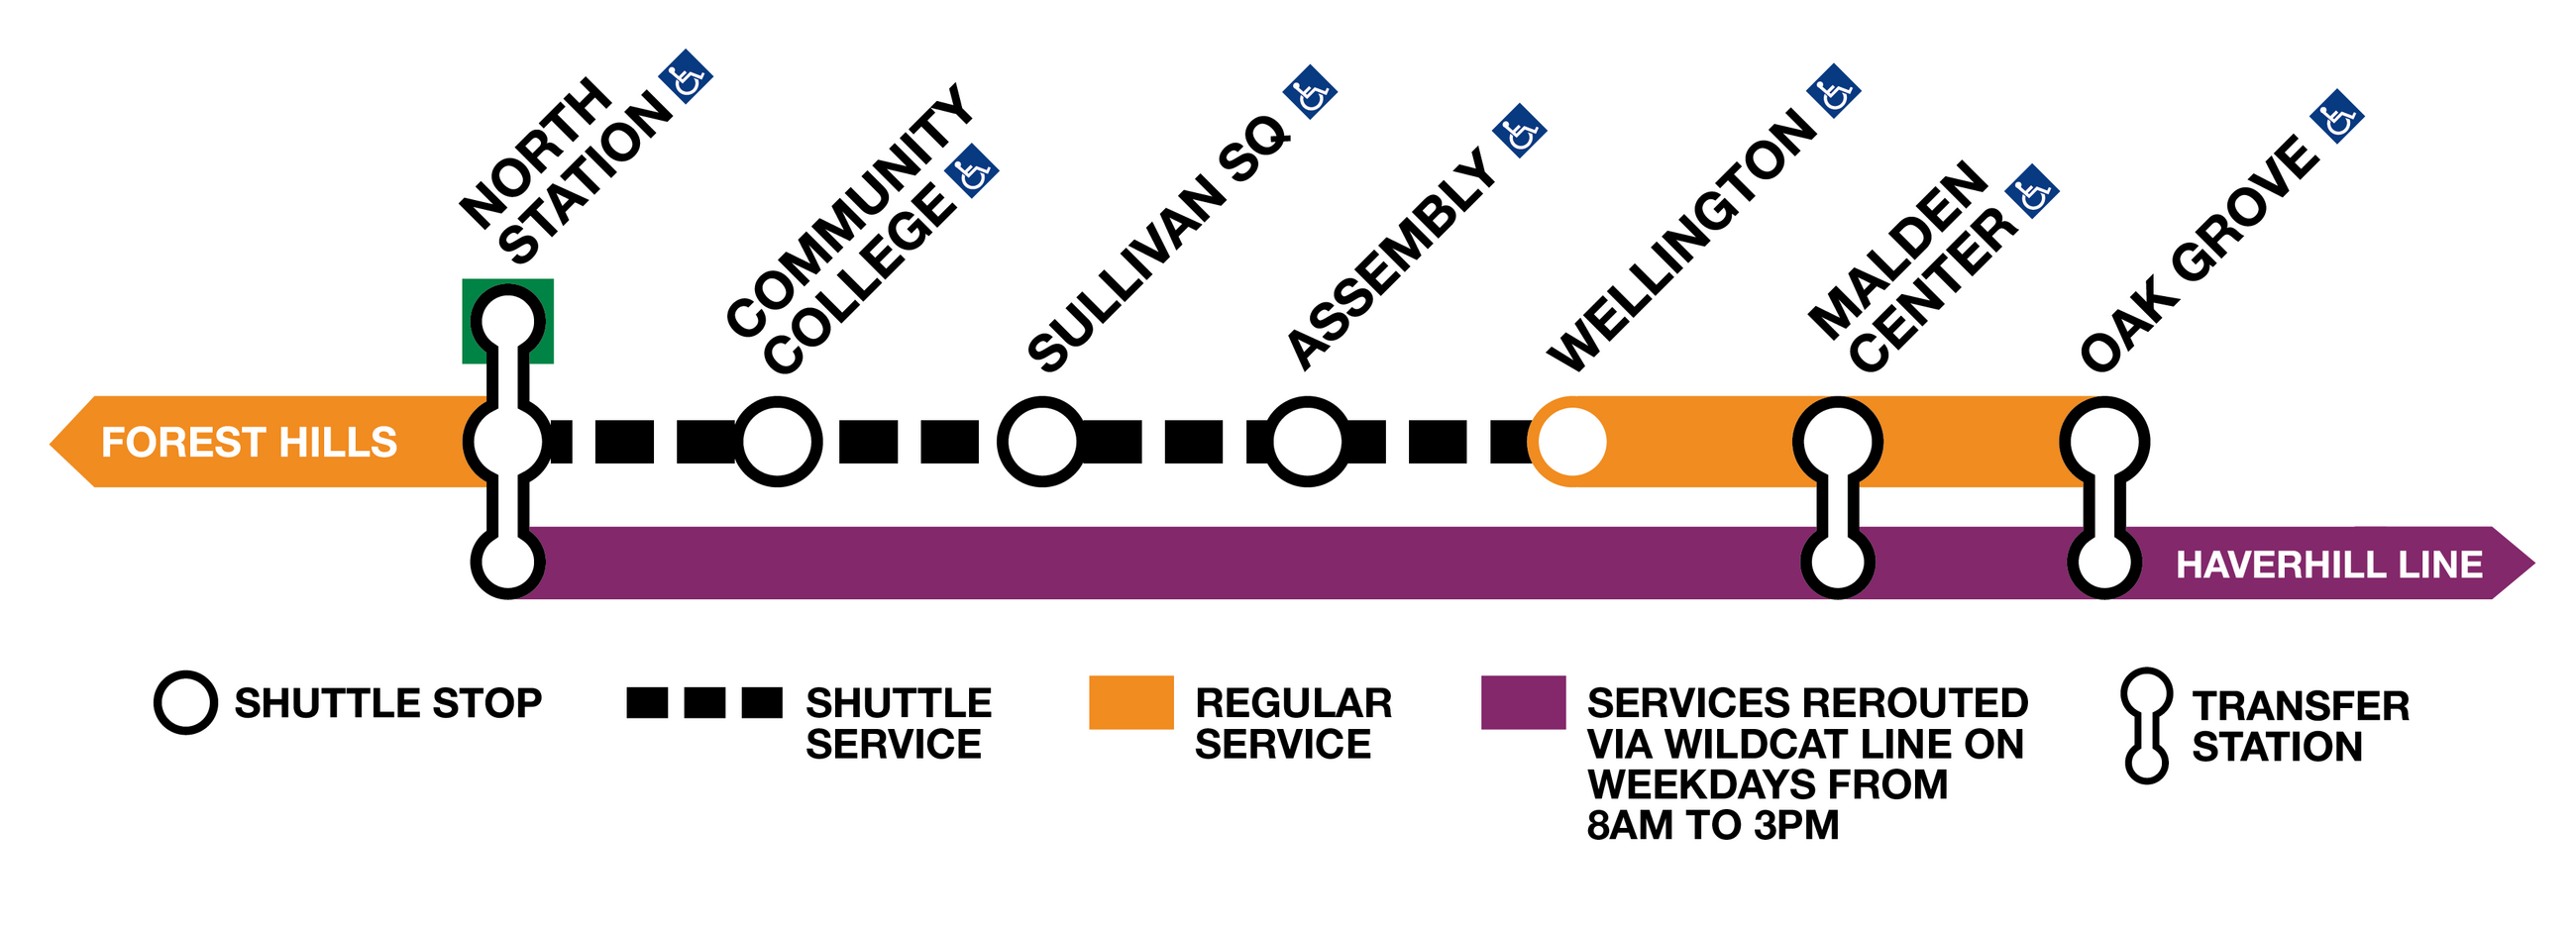 Shuttle service graphic for the Orange Line closure